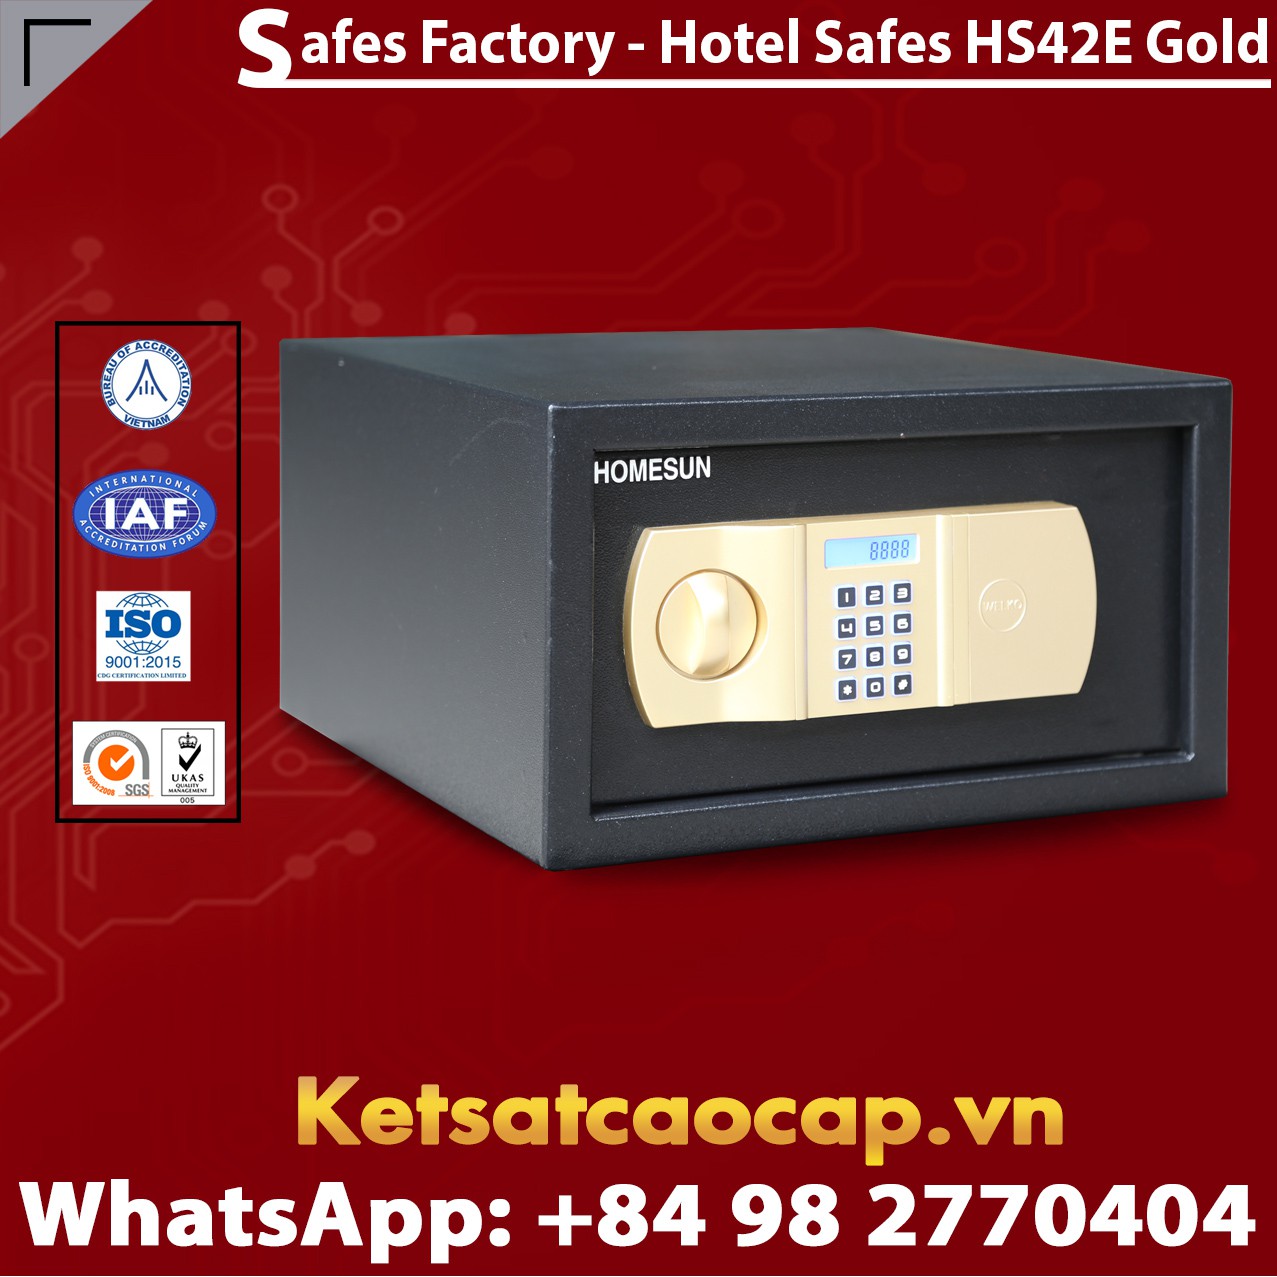 Hotel Safe Dimensions HOMESUN HS42 E Gold